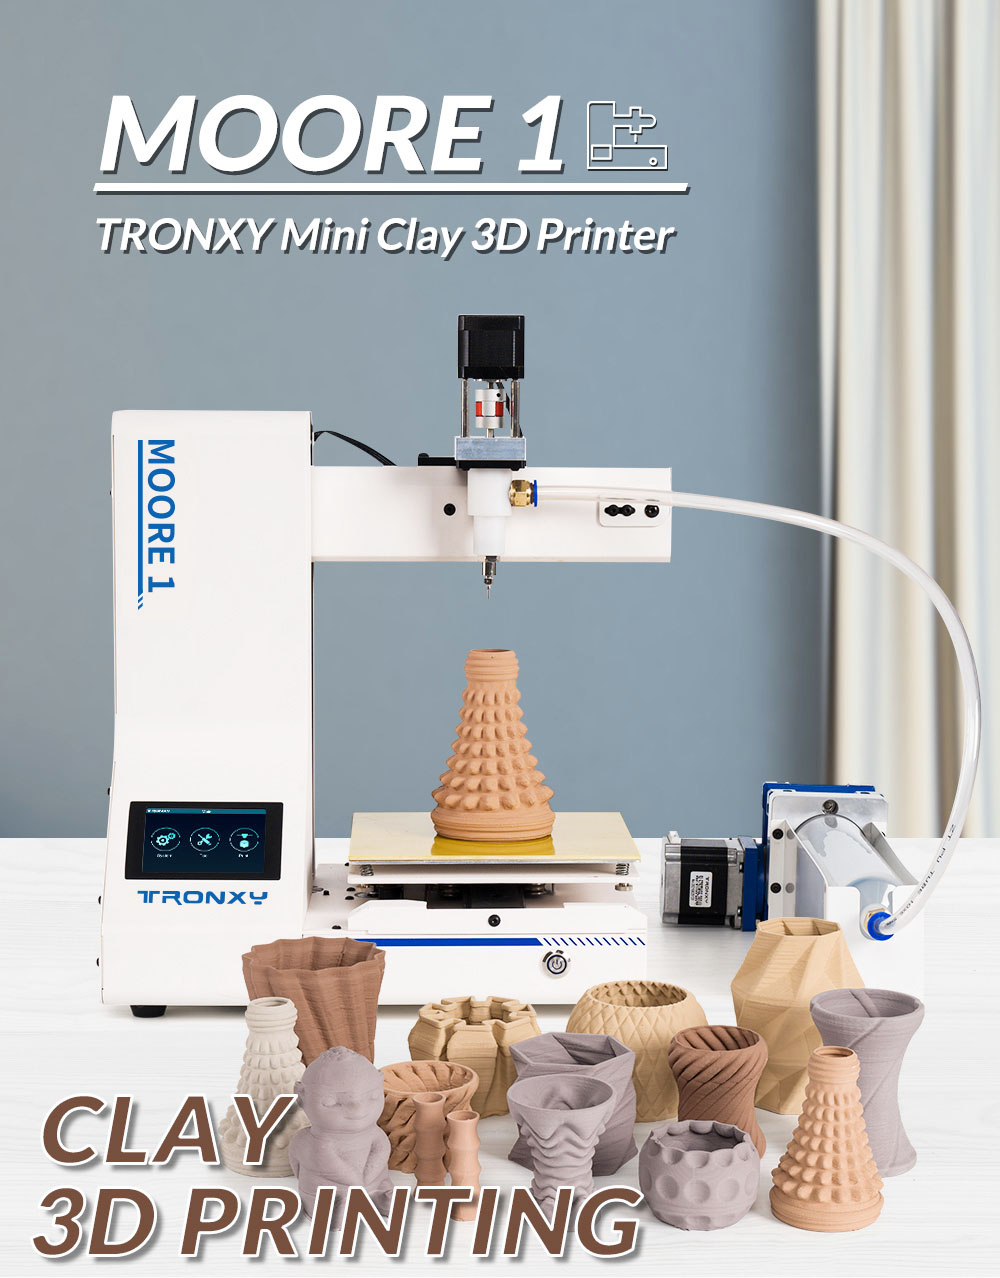 Tronxy Moore 1 Mini Clay 3D-Drucker, 40 mm/s Druckgeschwindigkeit, Druck fortsetzen, TMC2209, 180*180*180mm